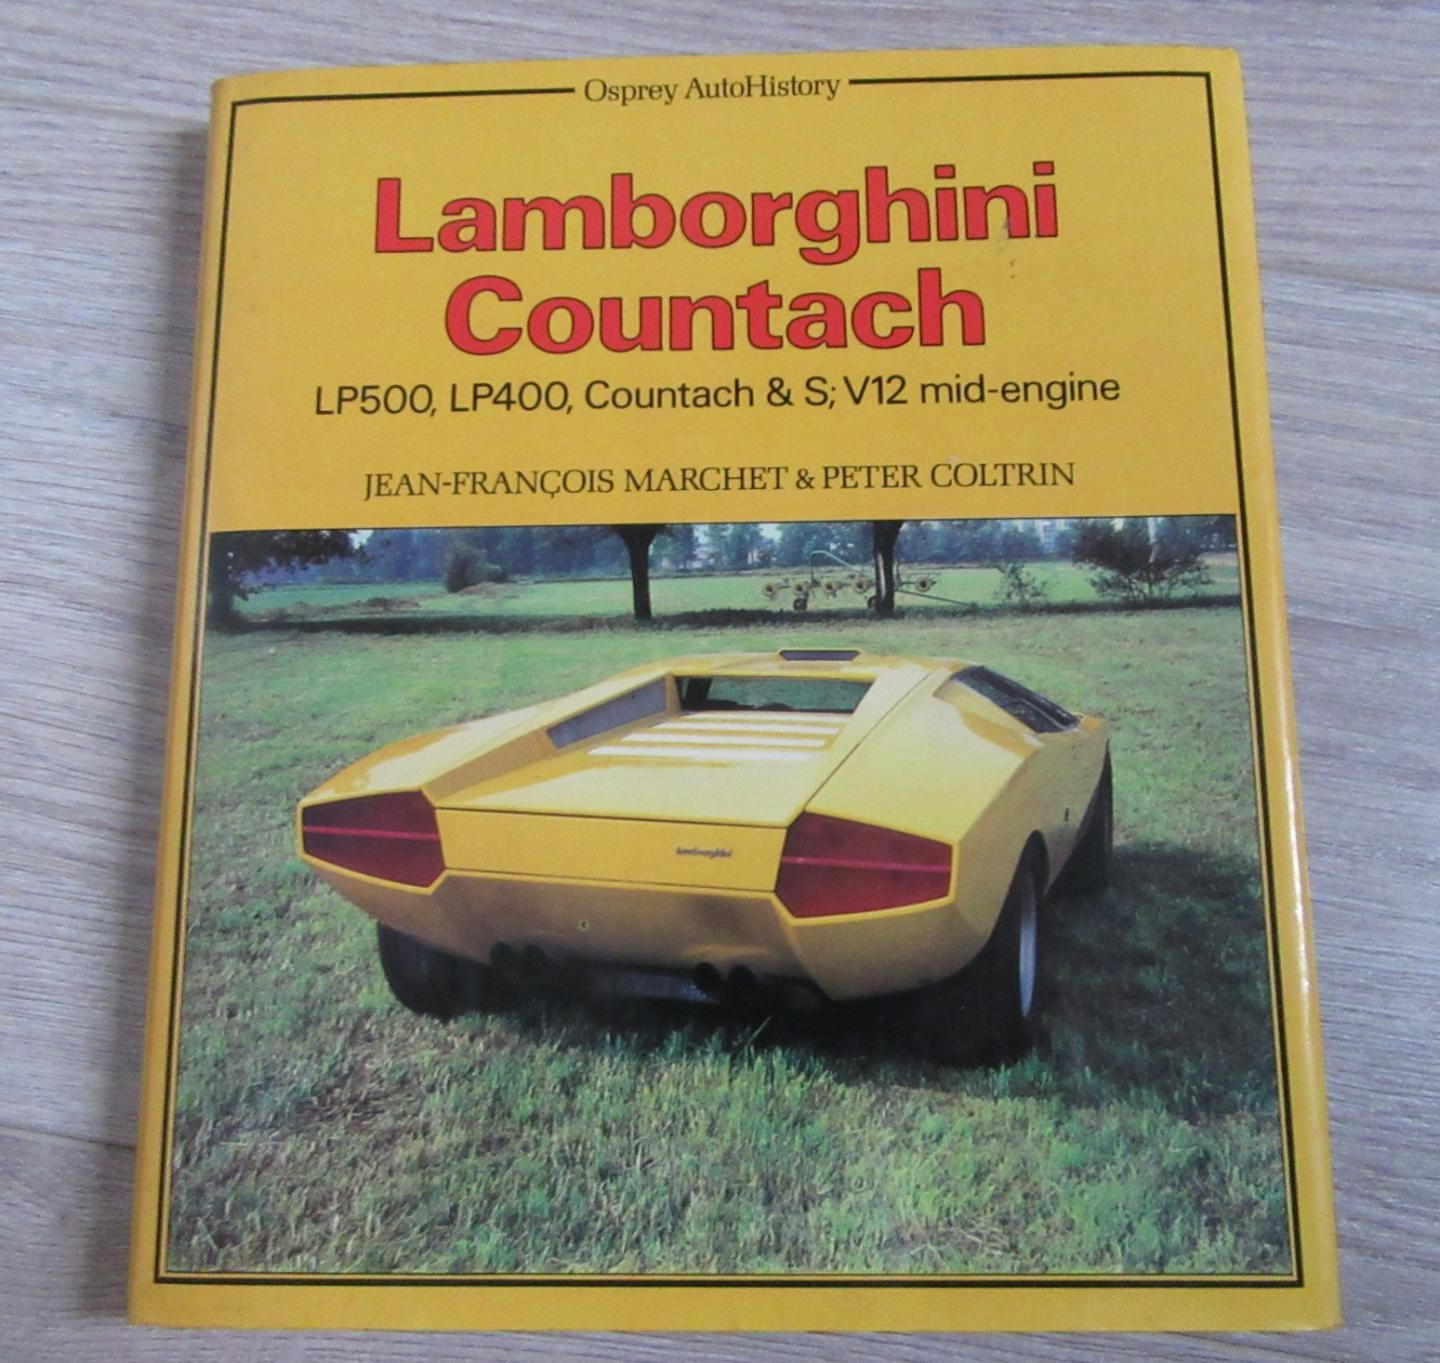 Jean-Francois Marchet (Author), Peter Coltrin (Author) - Lamborghini Countach